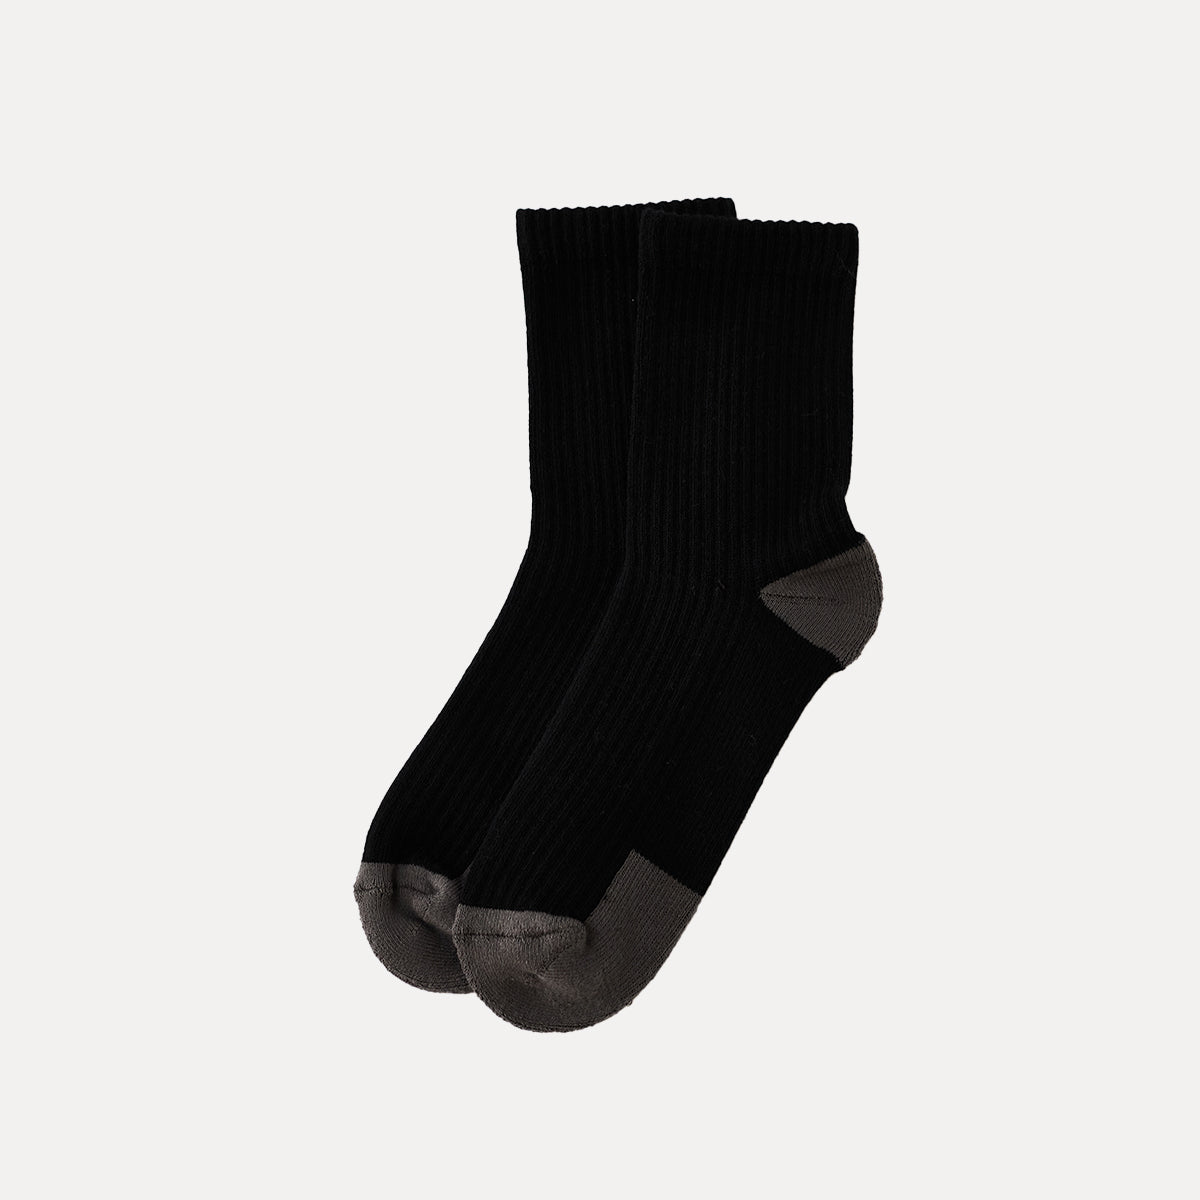 襪子 | ACTIVE 船員襪 - Hi 黑色/灰色